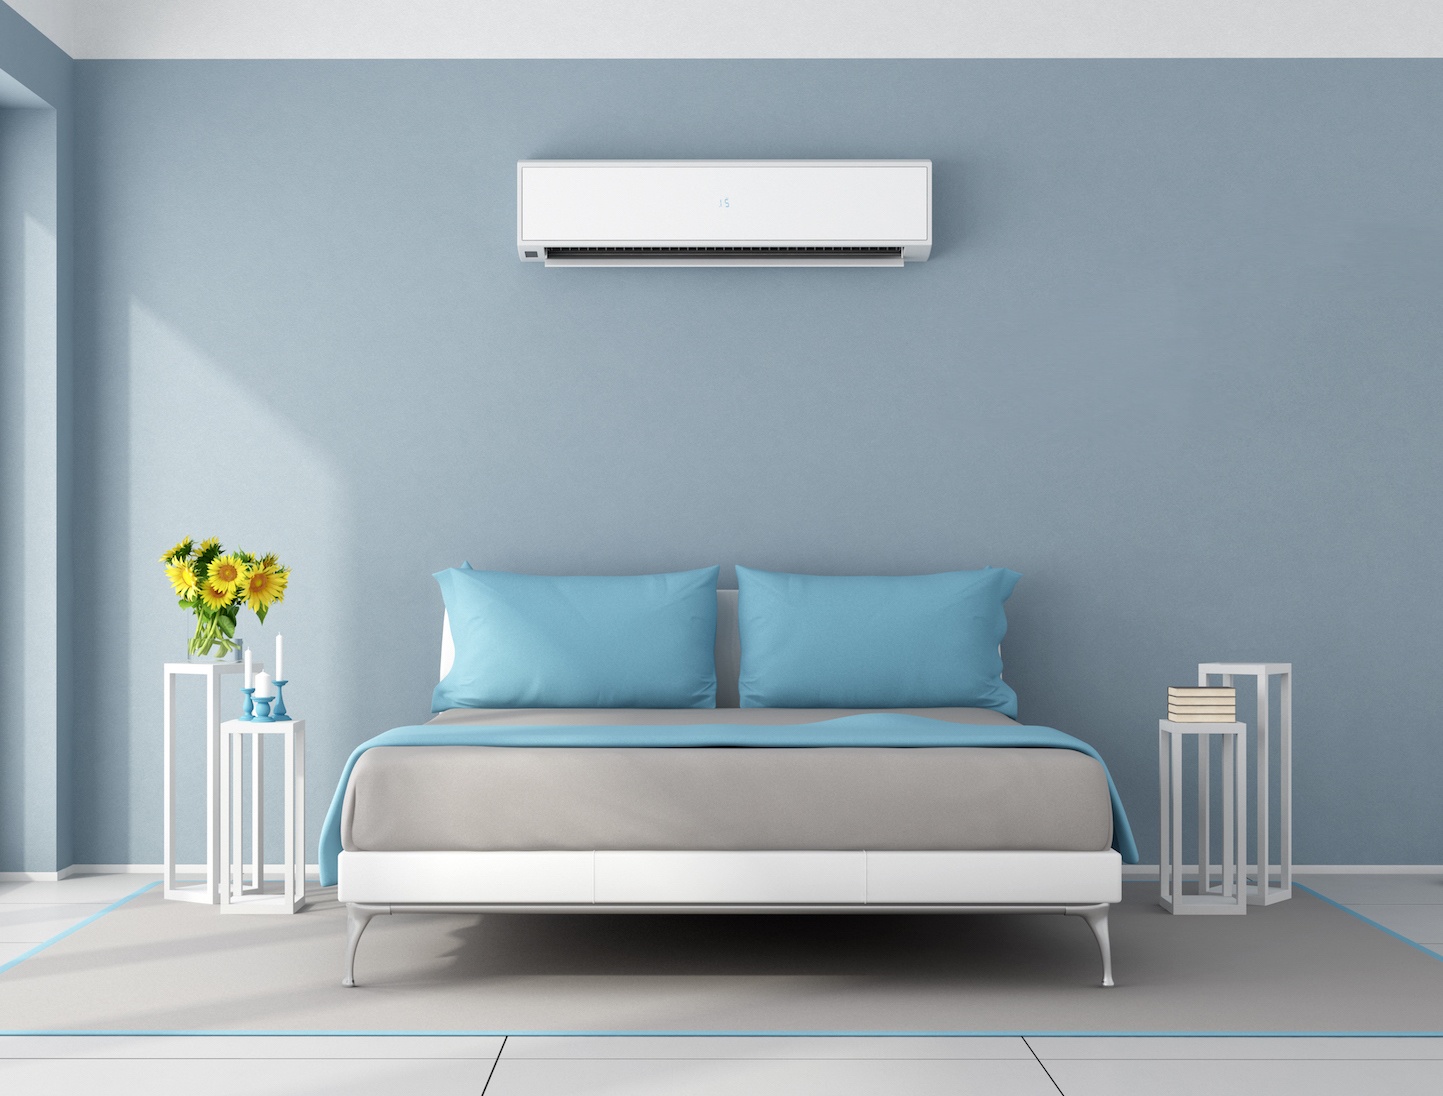 Temperature control in bedroom